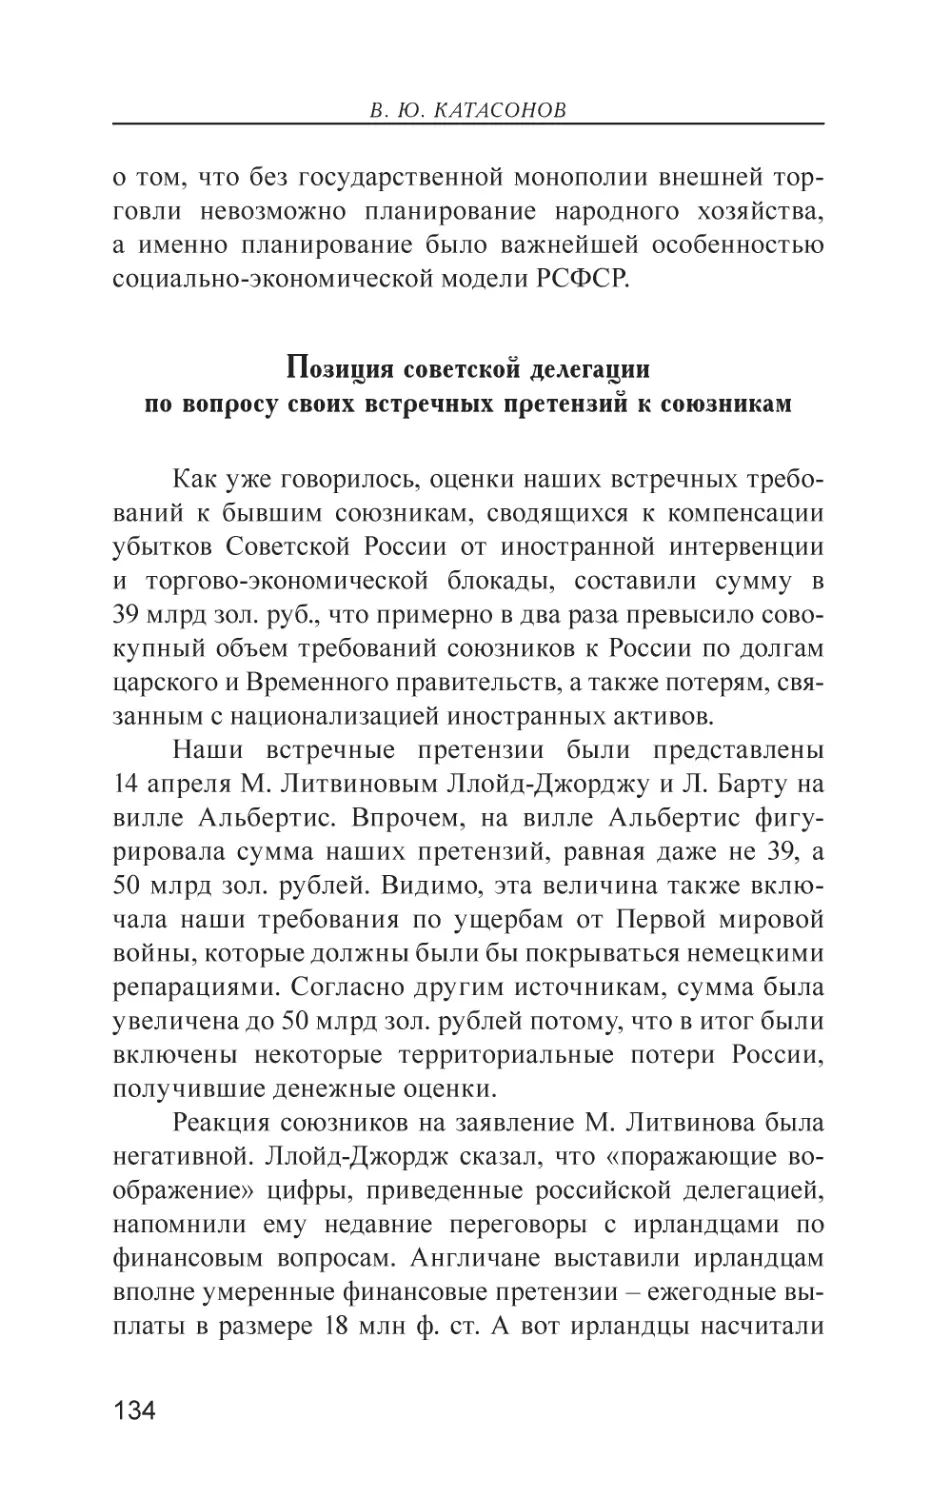 Позиция советской делегации по вопросу своих встречных претензий к союзникам